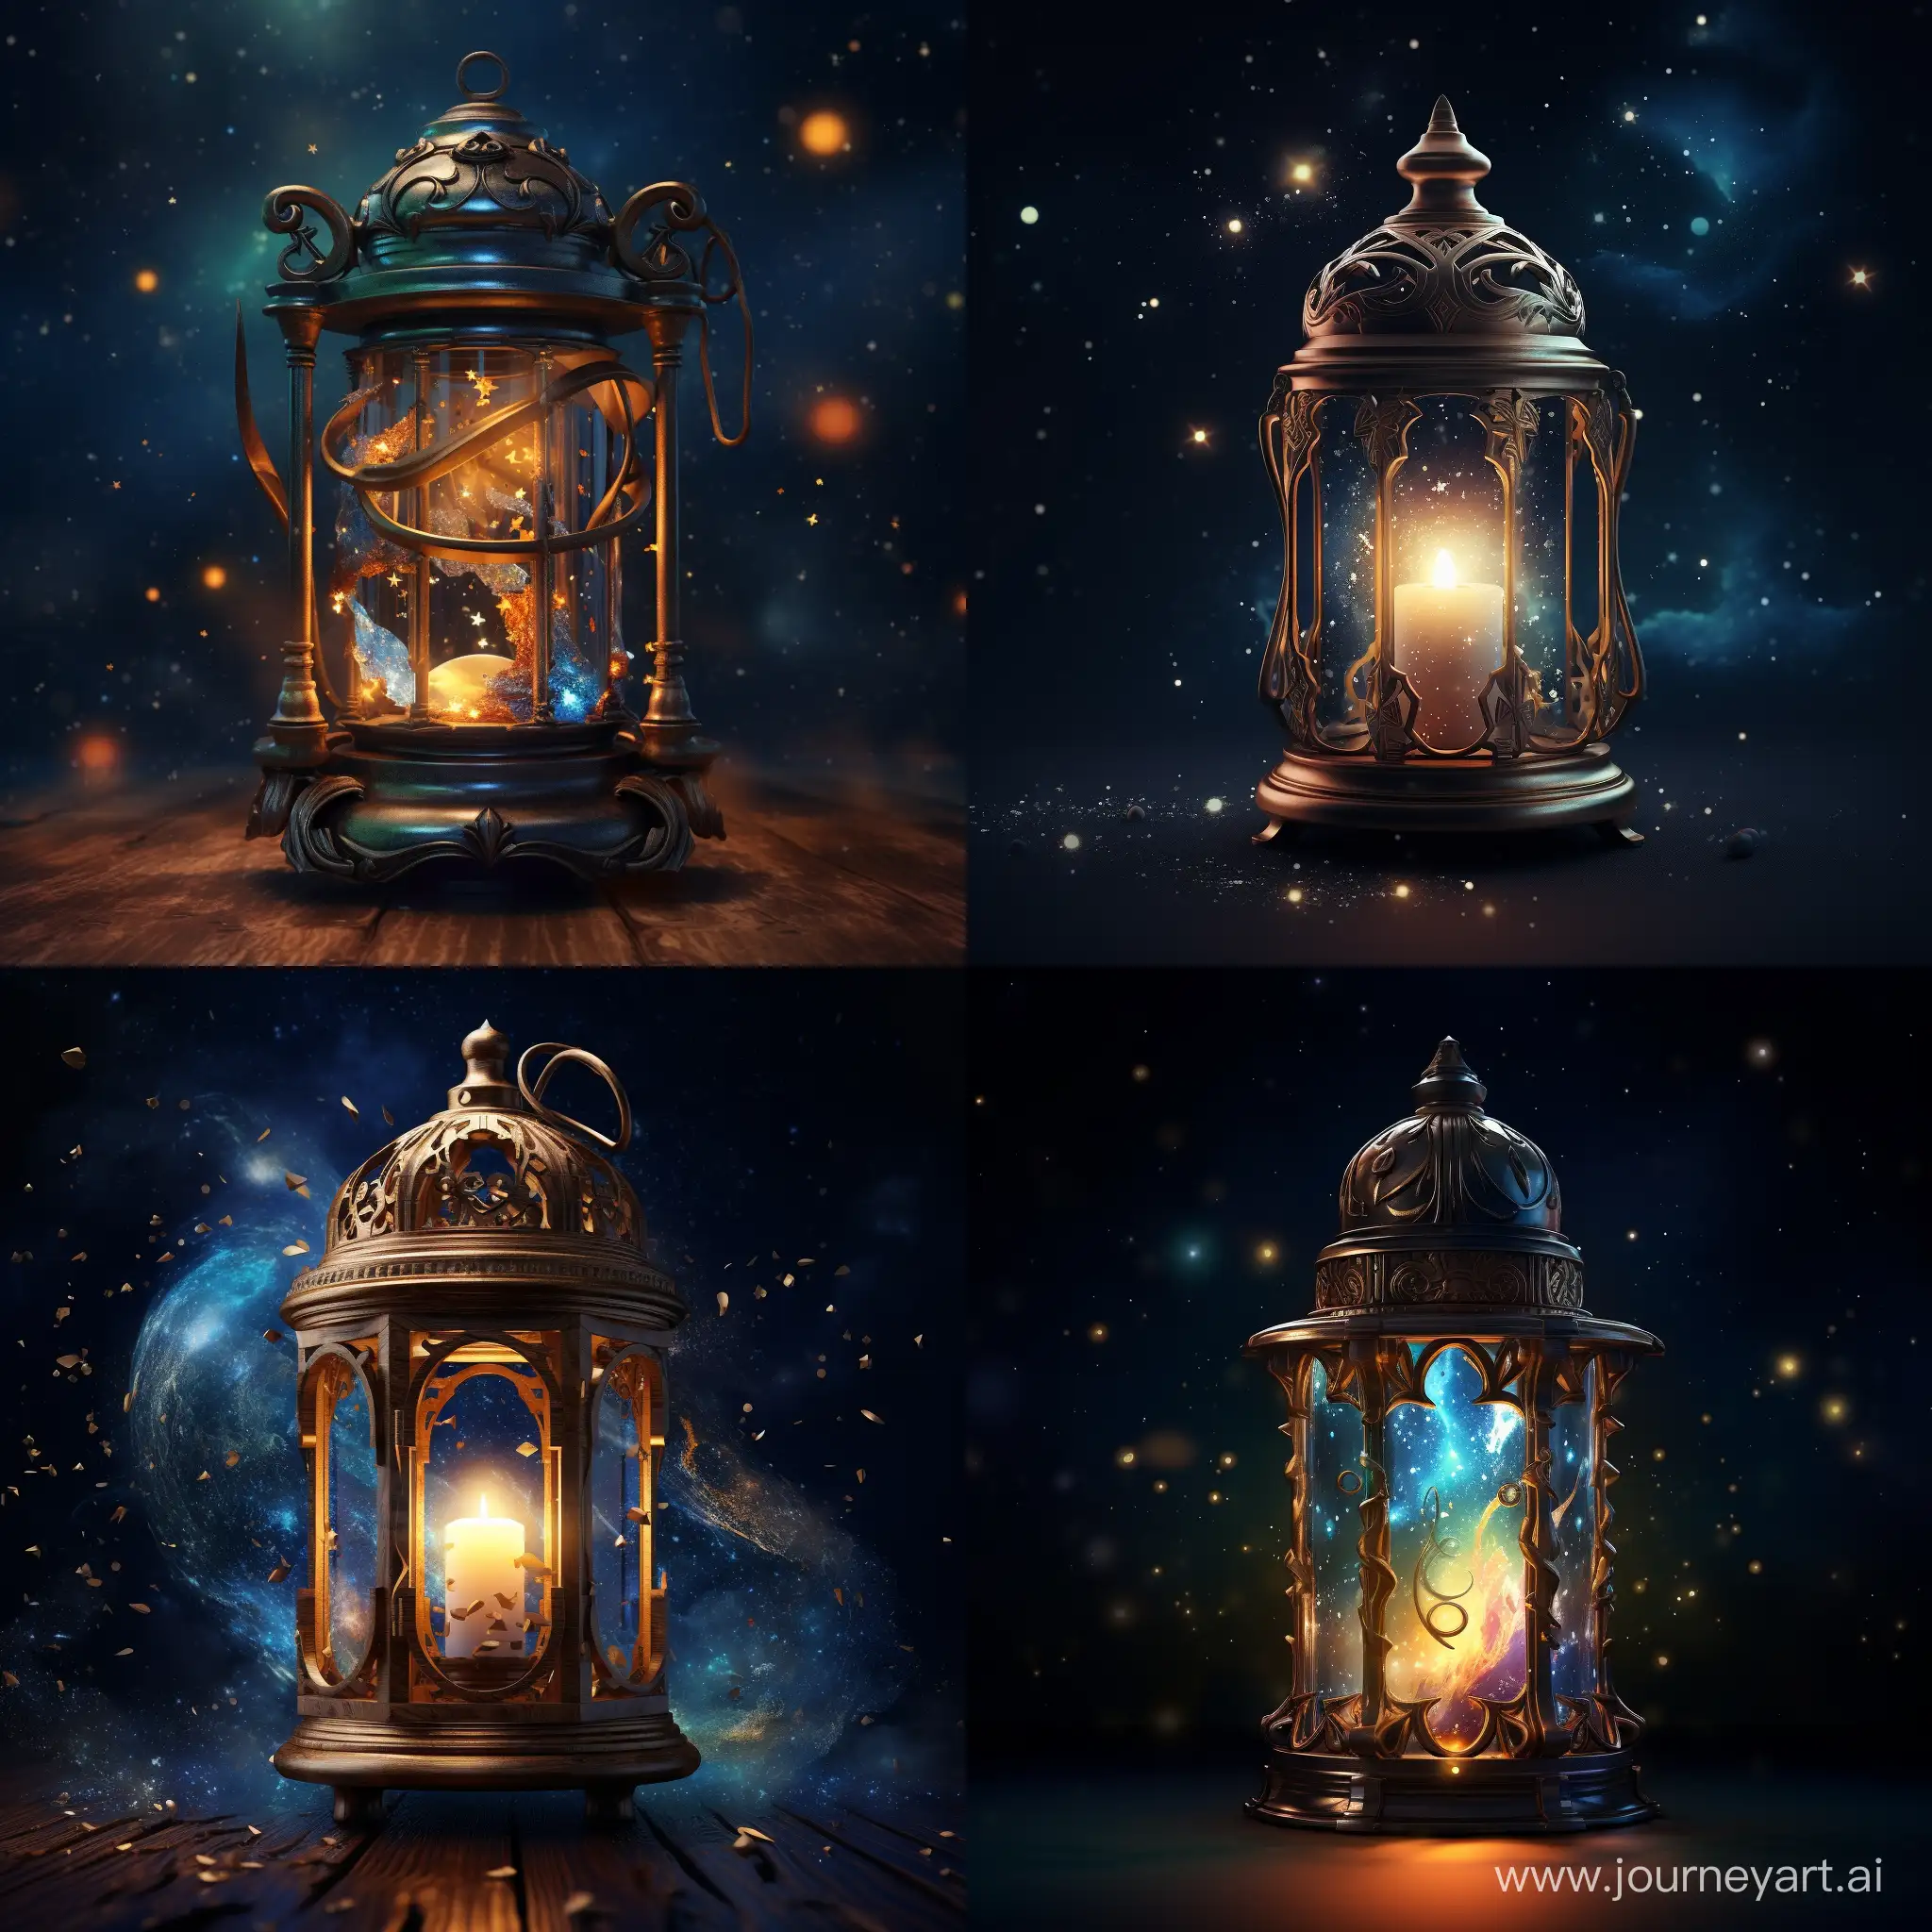 фонарь со свечой внутри, находящийся в магическом космосе. Фонарь деревянный со стеклянными вставкам, в космосе видны галактики и звёзды